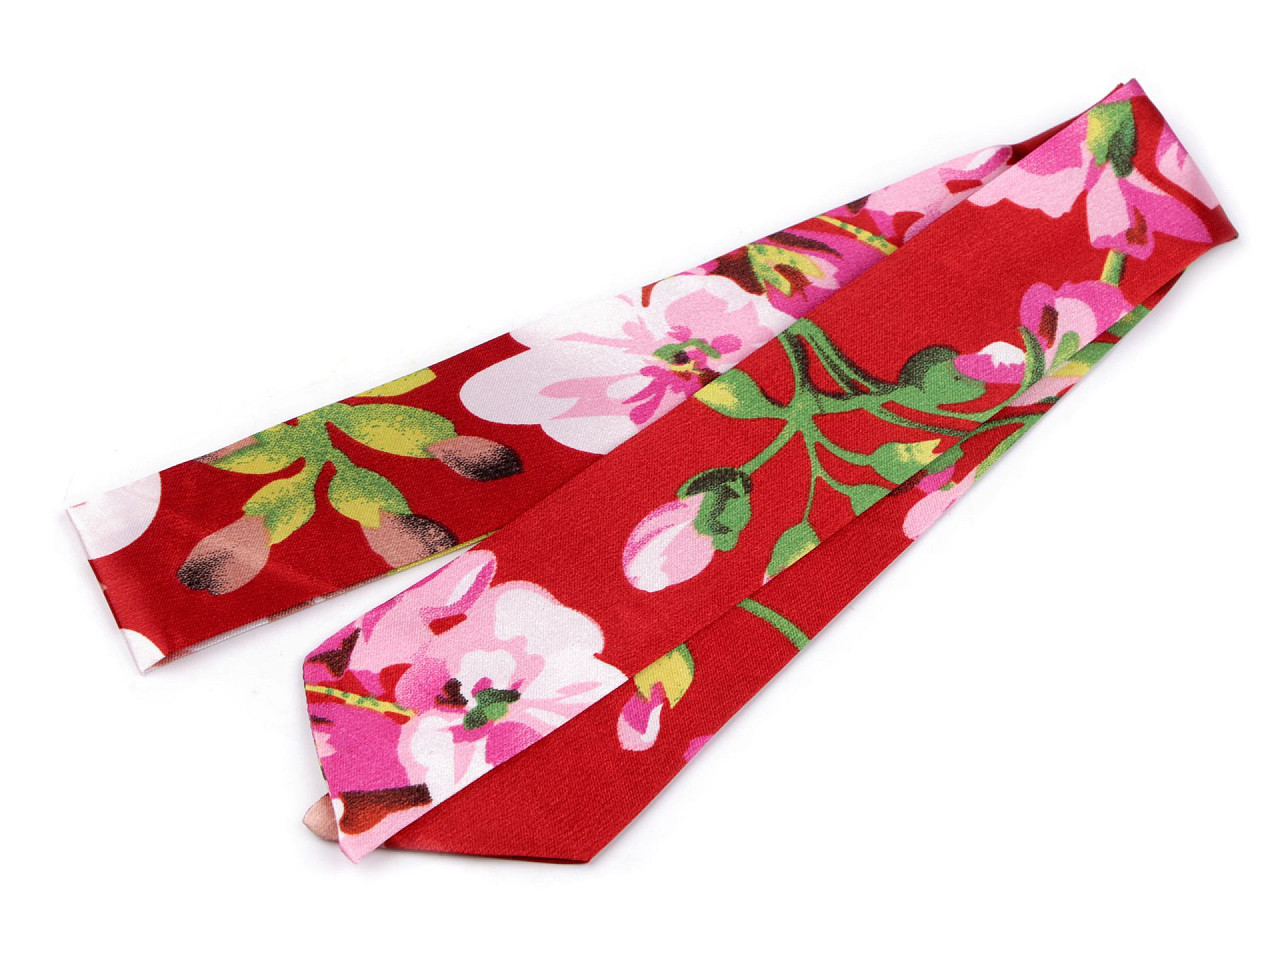 Šátek úzký do vlasů, na krk, na kabelku jednobarevný, s květy, barva 10 červená květy